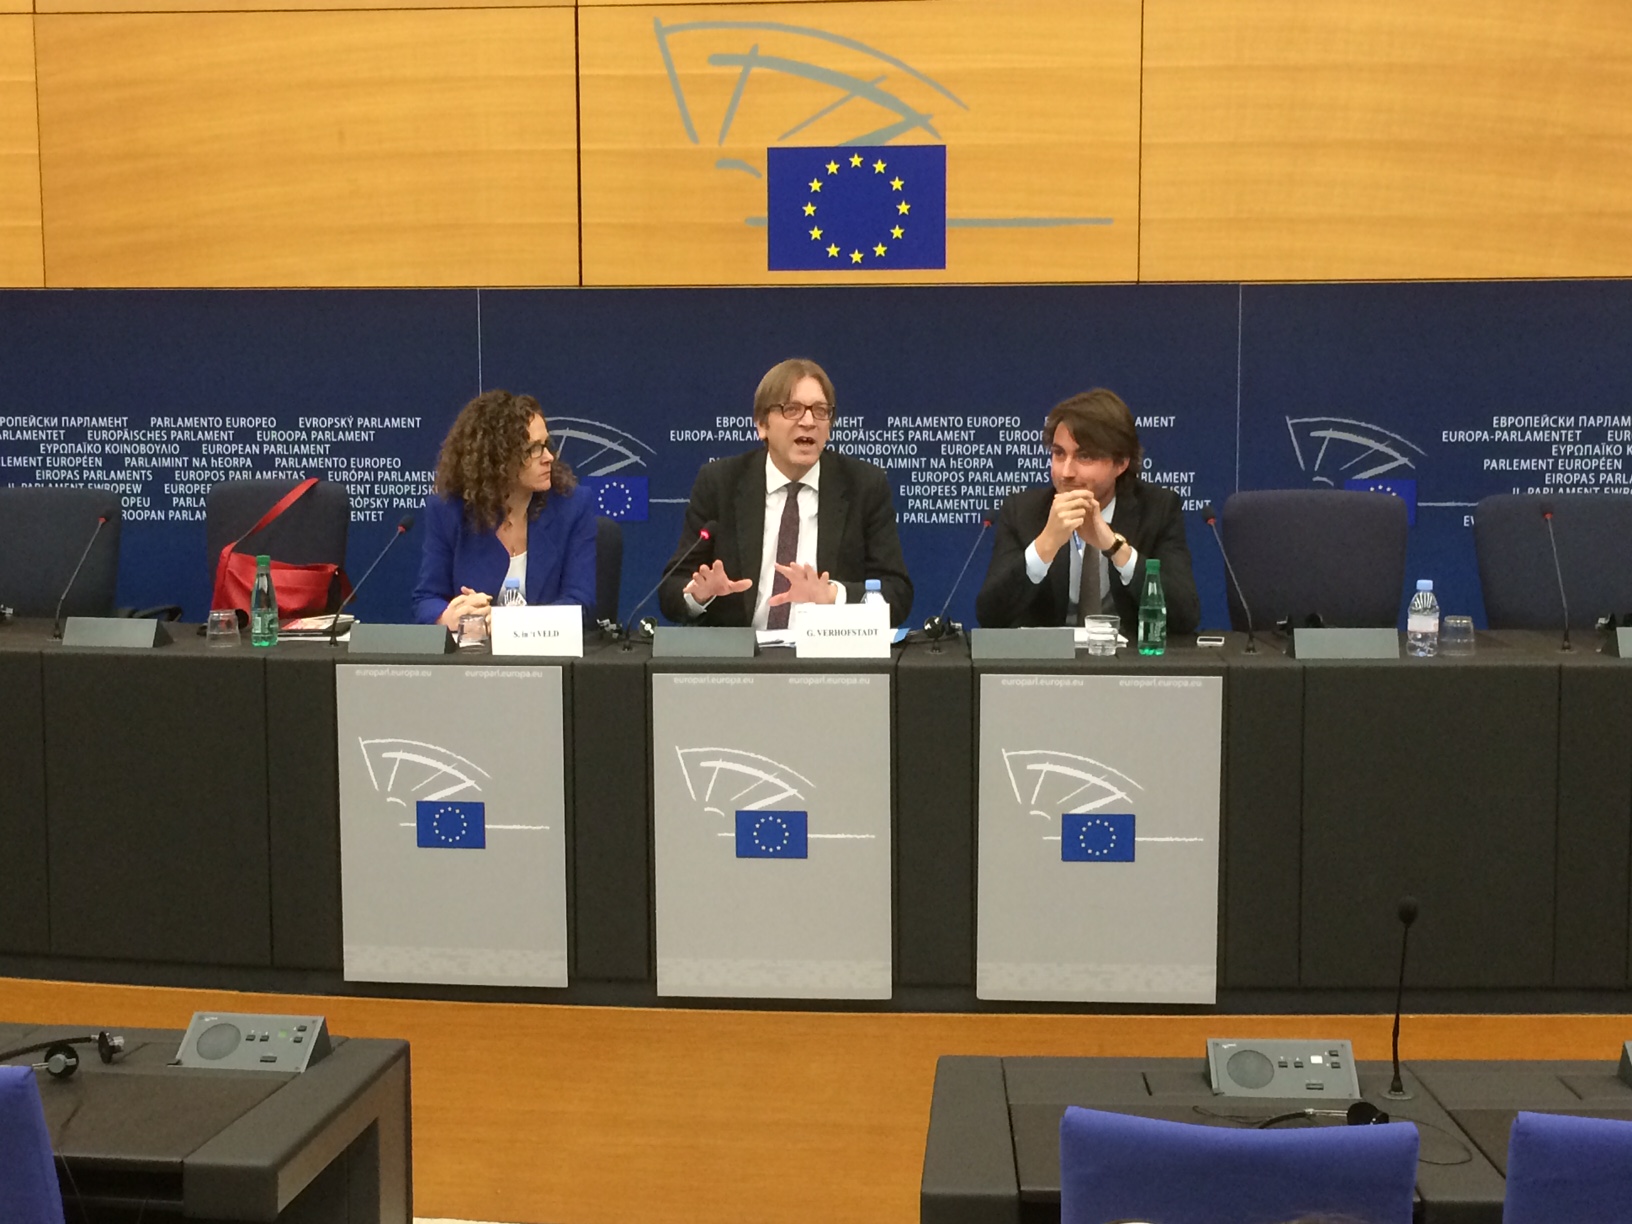 La rueda de prensa en la que ALDE presento su propuesta de gobernanza democrática en estrasburgo. El Presidente Verhofstadt con Sophie In't Veld